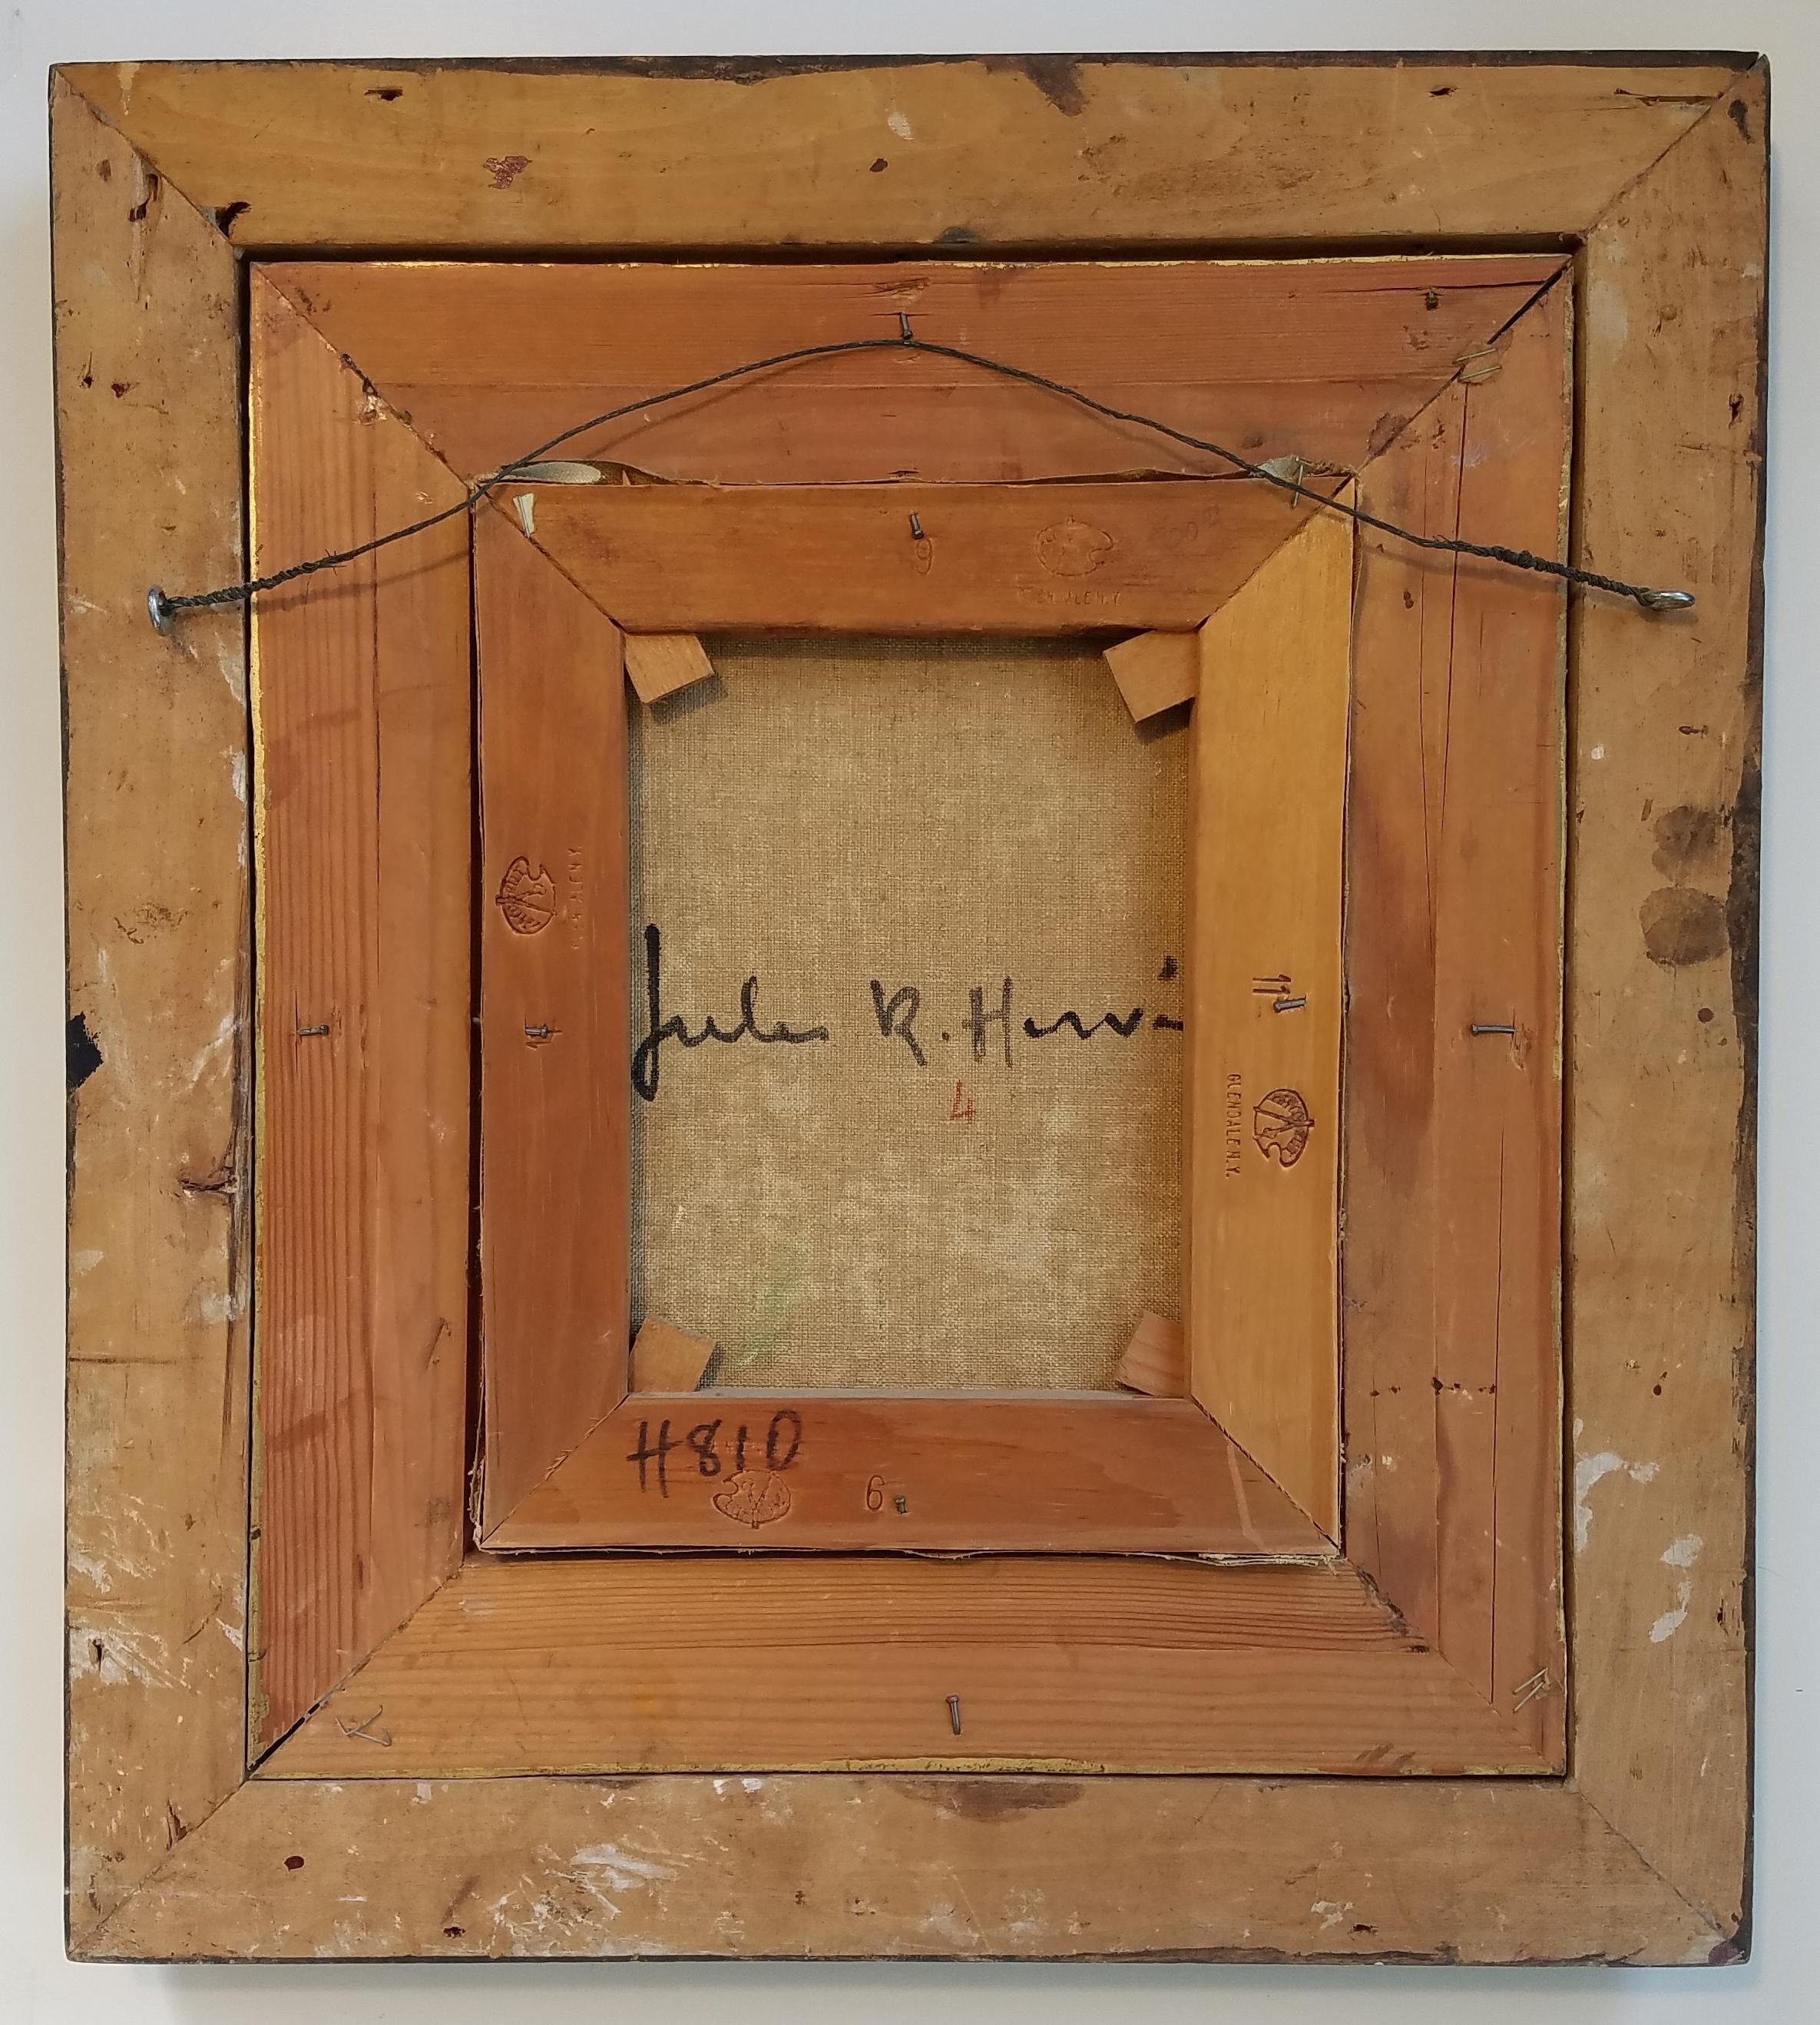 Jules Herve (französisch, 1887 - 1981)
Spiel mit Karos, um 1960
Öl auf Leinwand, Öl
10 5/8 x 8 5/8 Zoll
Signiert unten rechts; auf der Rückseite signiert

Der impressionistische Künstler von unserer Zeit, Jules Rene Herve, ist die Art von Künstler,